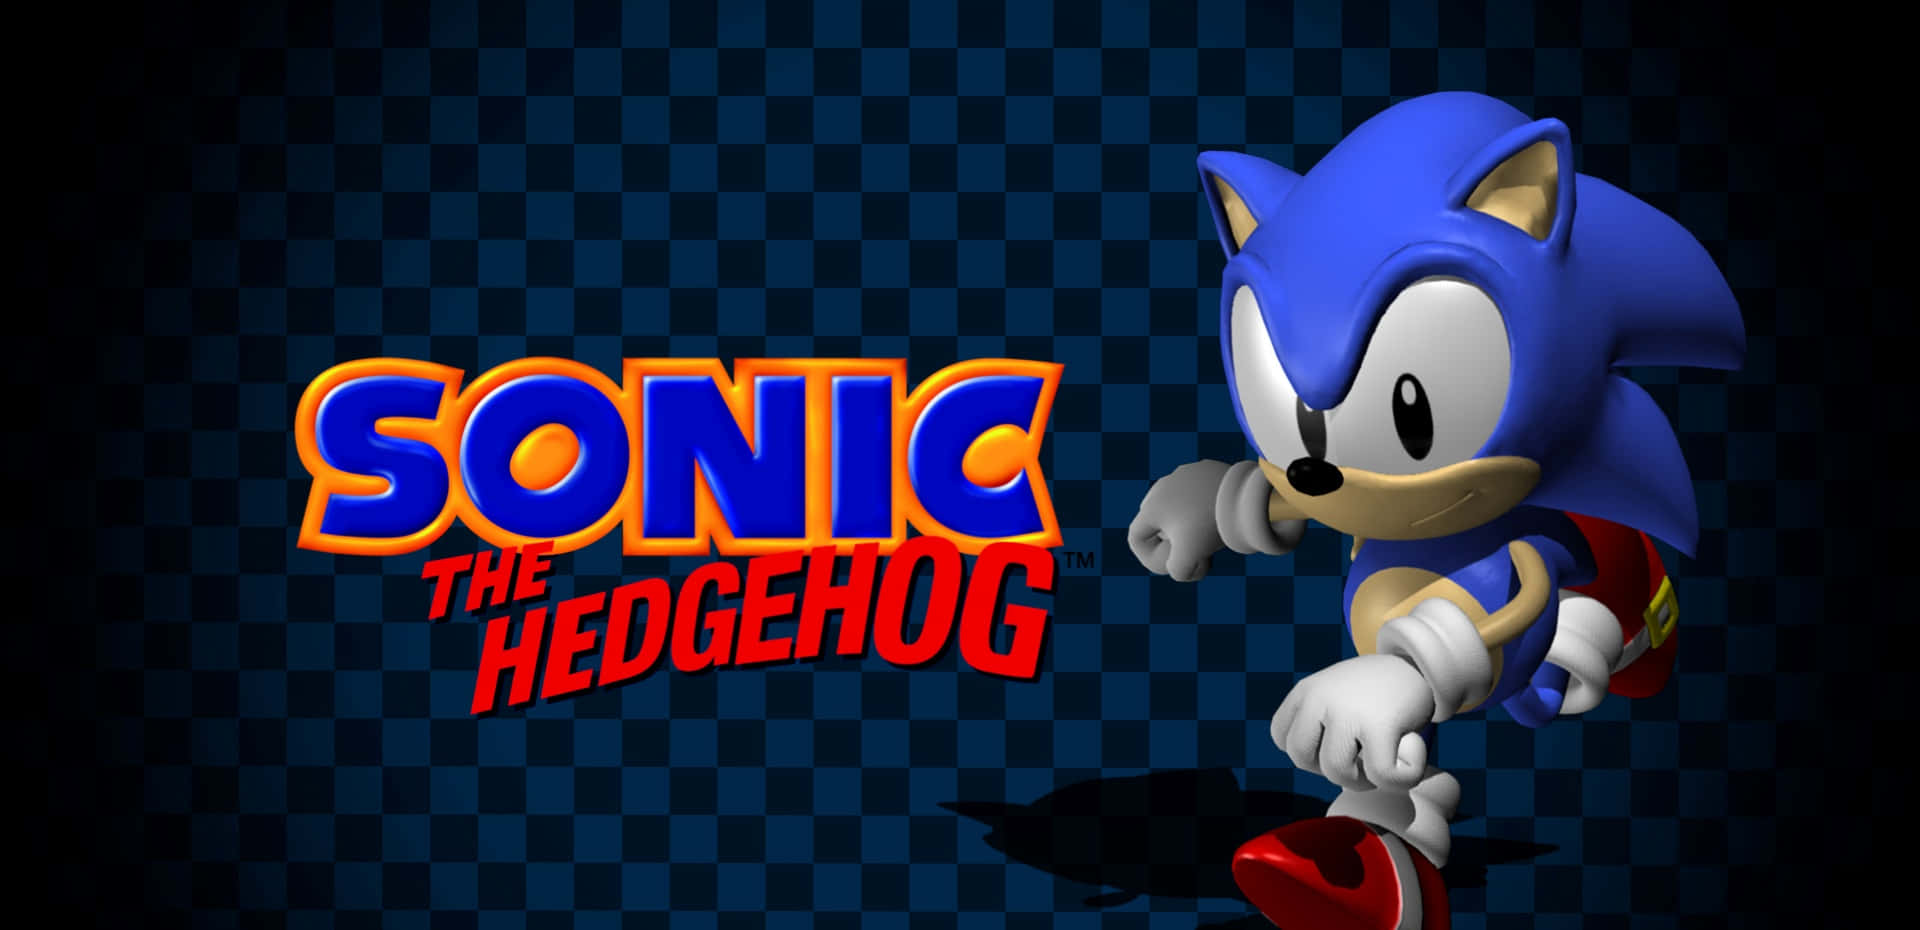 Ellogo De Sonic The Hedgehog En Un Fondo Azul.